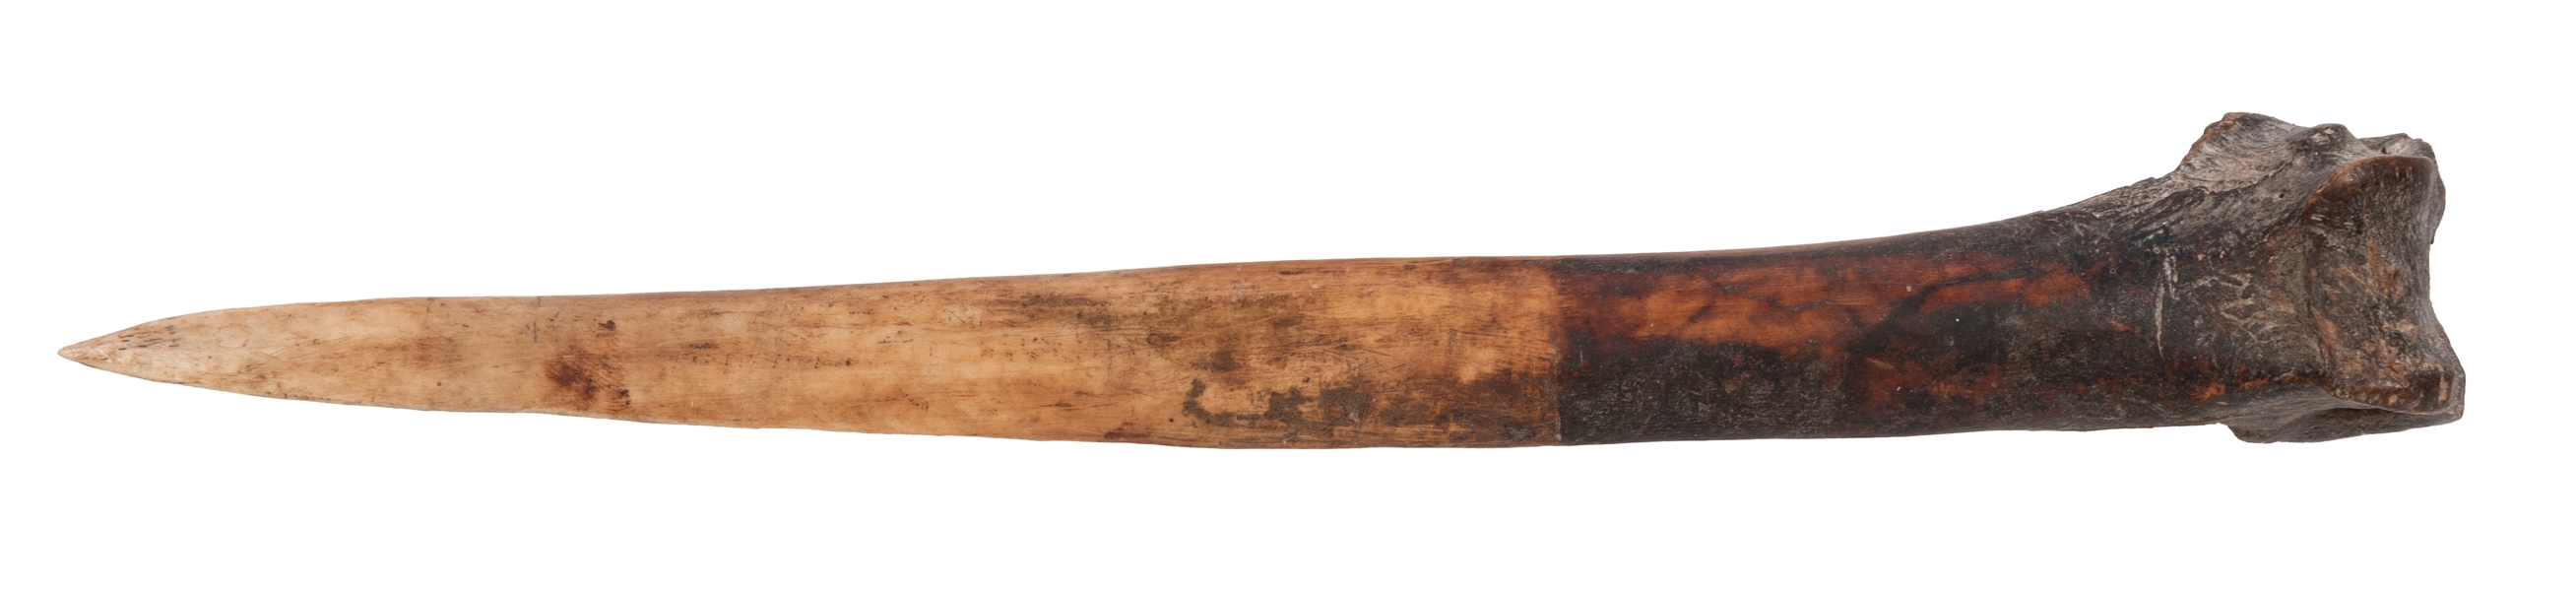 Cassowary Leg Bone Dagger.